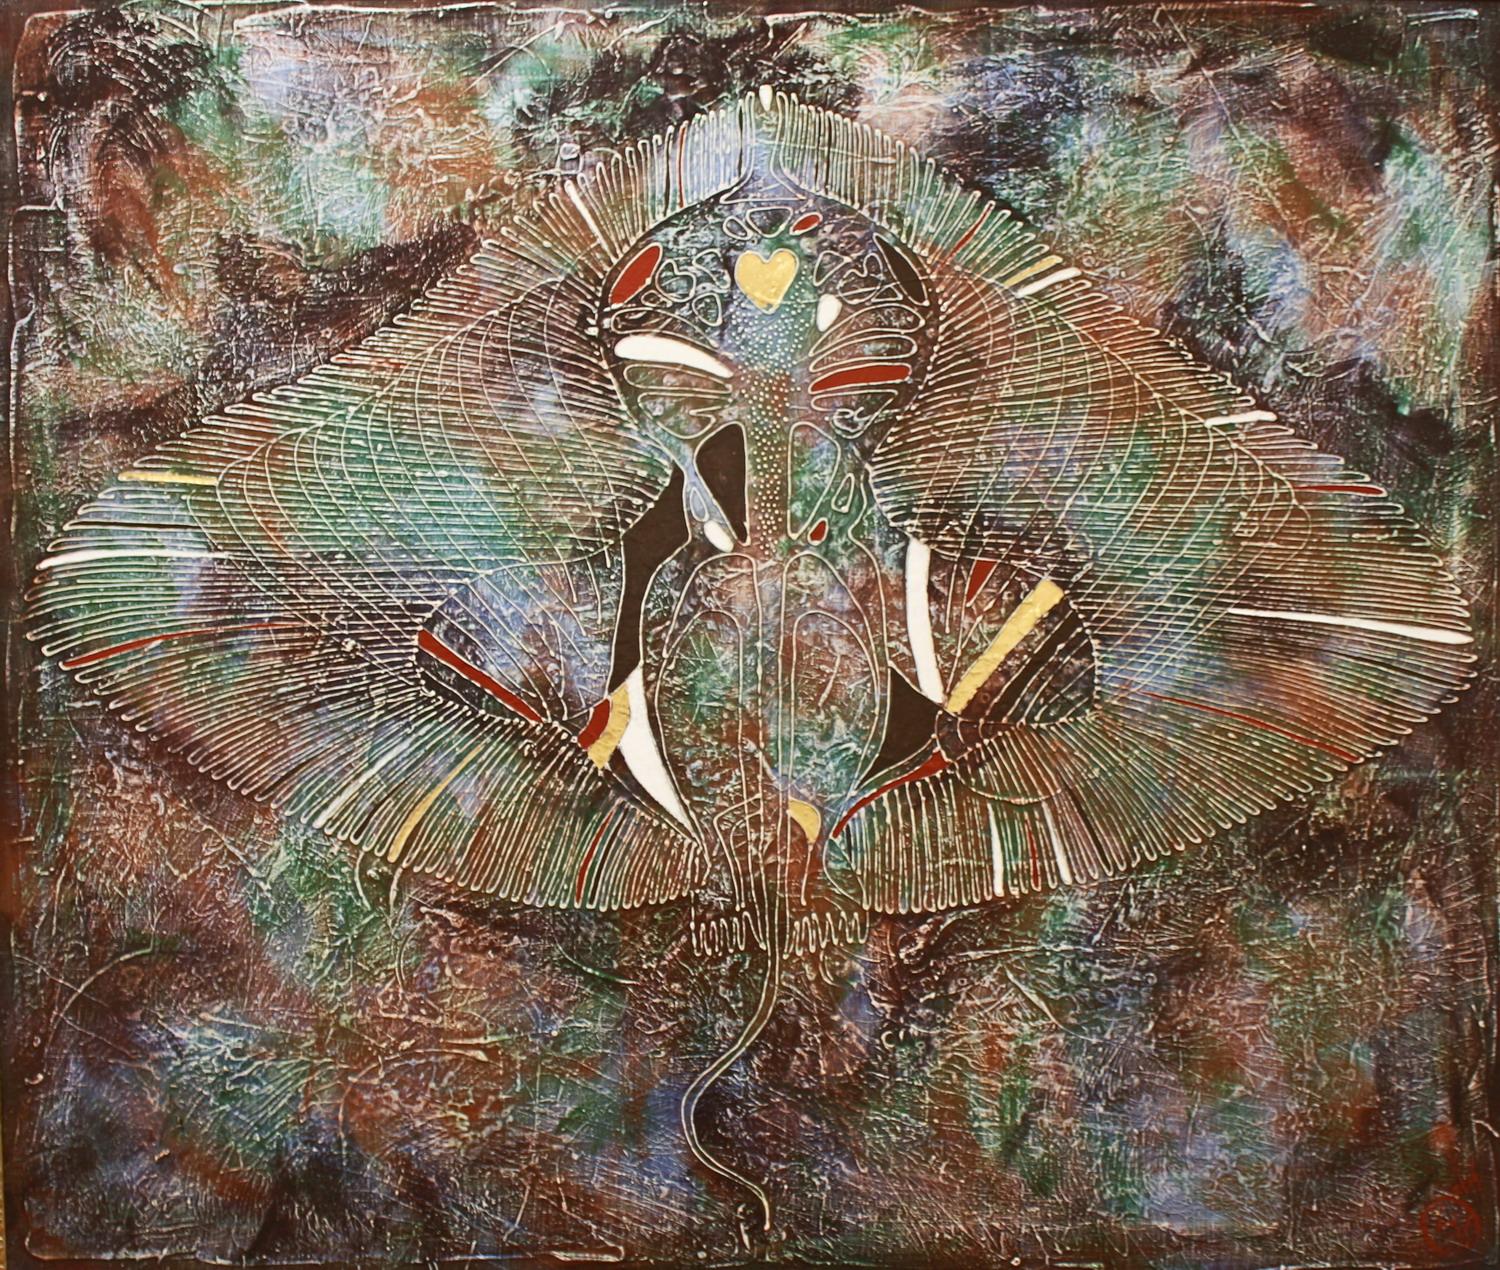 Dieses Kunstwerk ist Teil des Projekts TIME AS X-RAY.

Die Farbe wird in der Technik des Autors der Malerei von Vasily Zianko basierte Acrylmalerei auf Leinwand mit einer Vielzahl von Texturen, Wäschen, die feinste Lasur, volumetrische Konturen